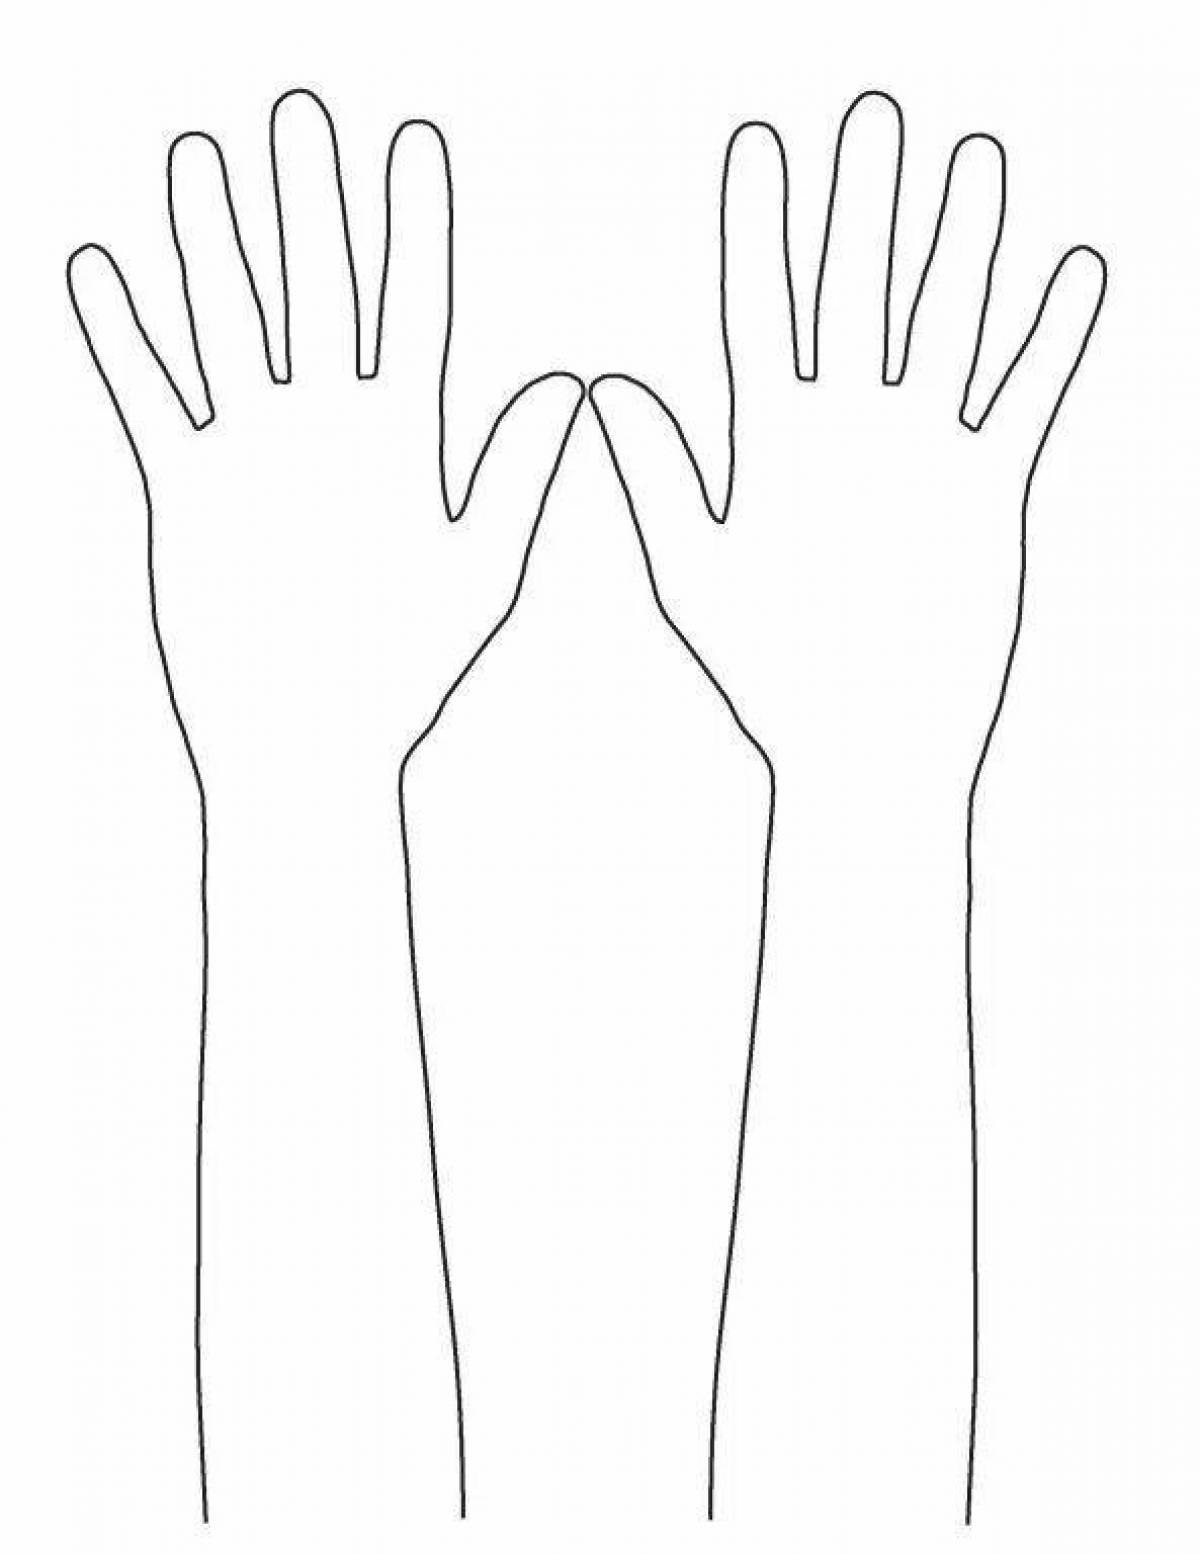 Сложная страница раскраски человеческой руки